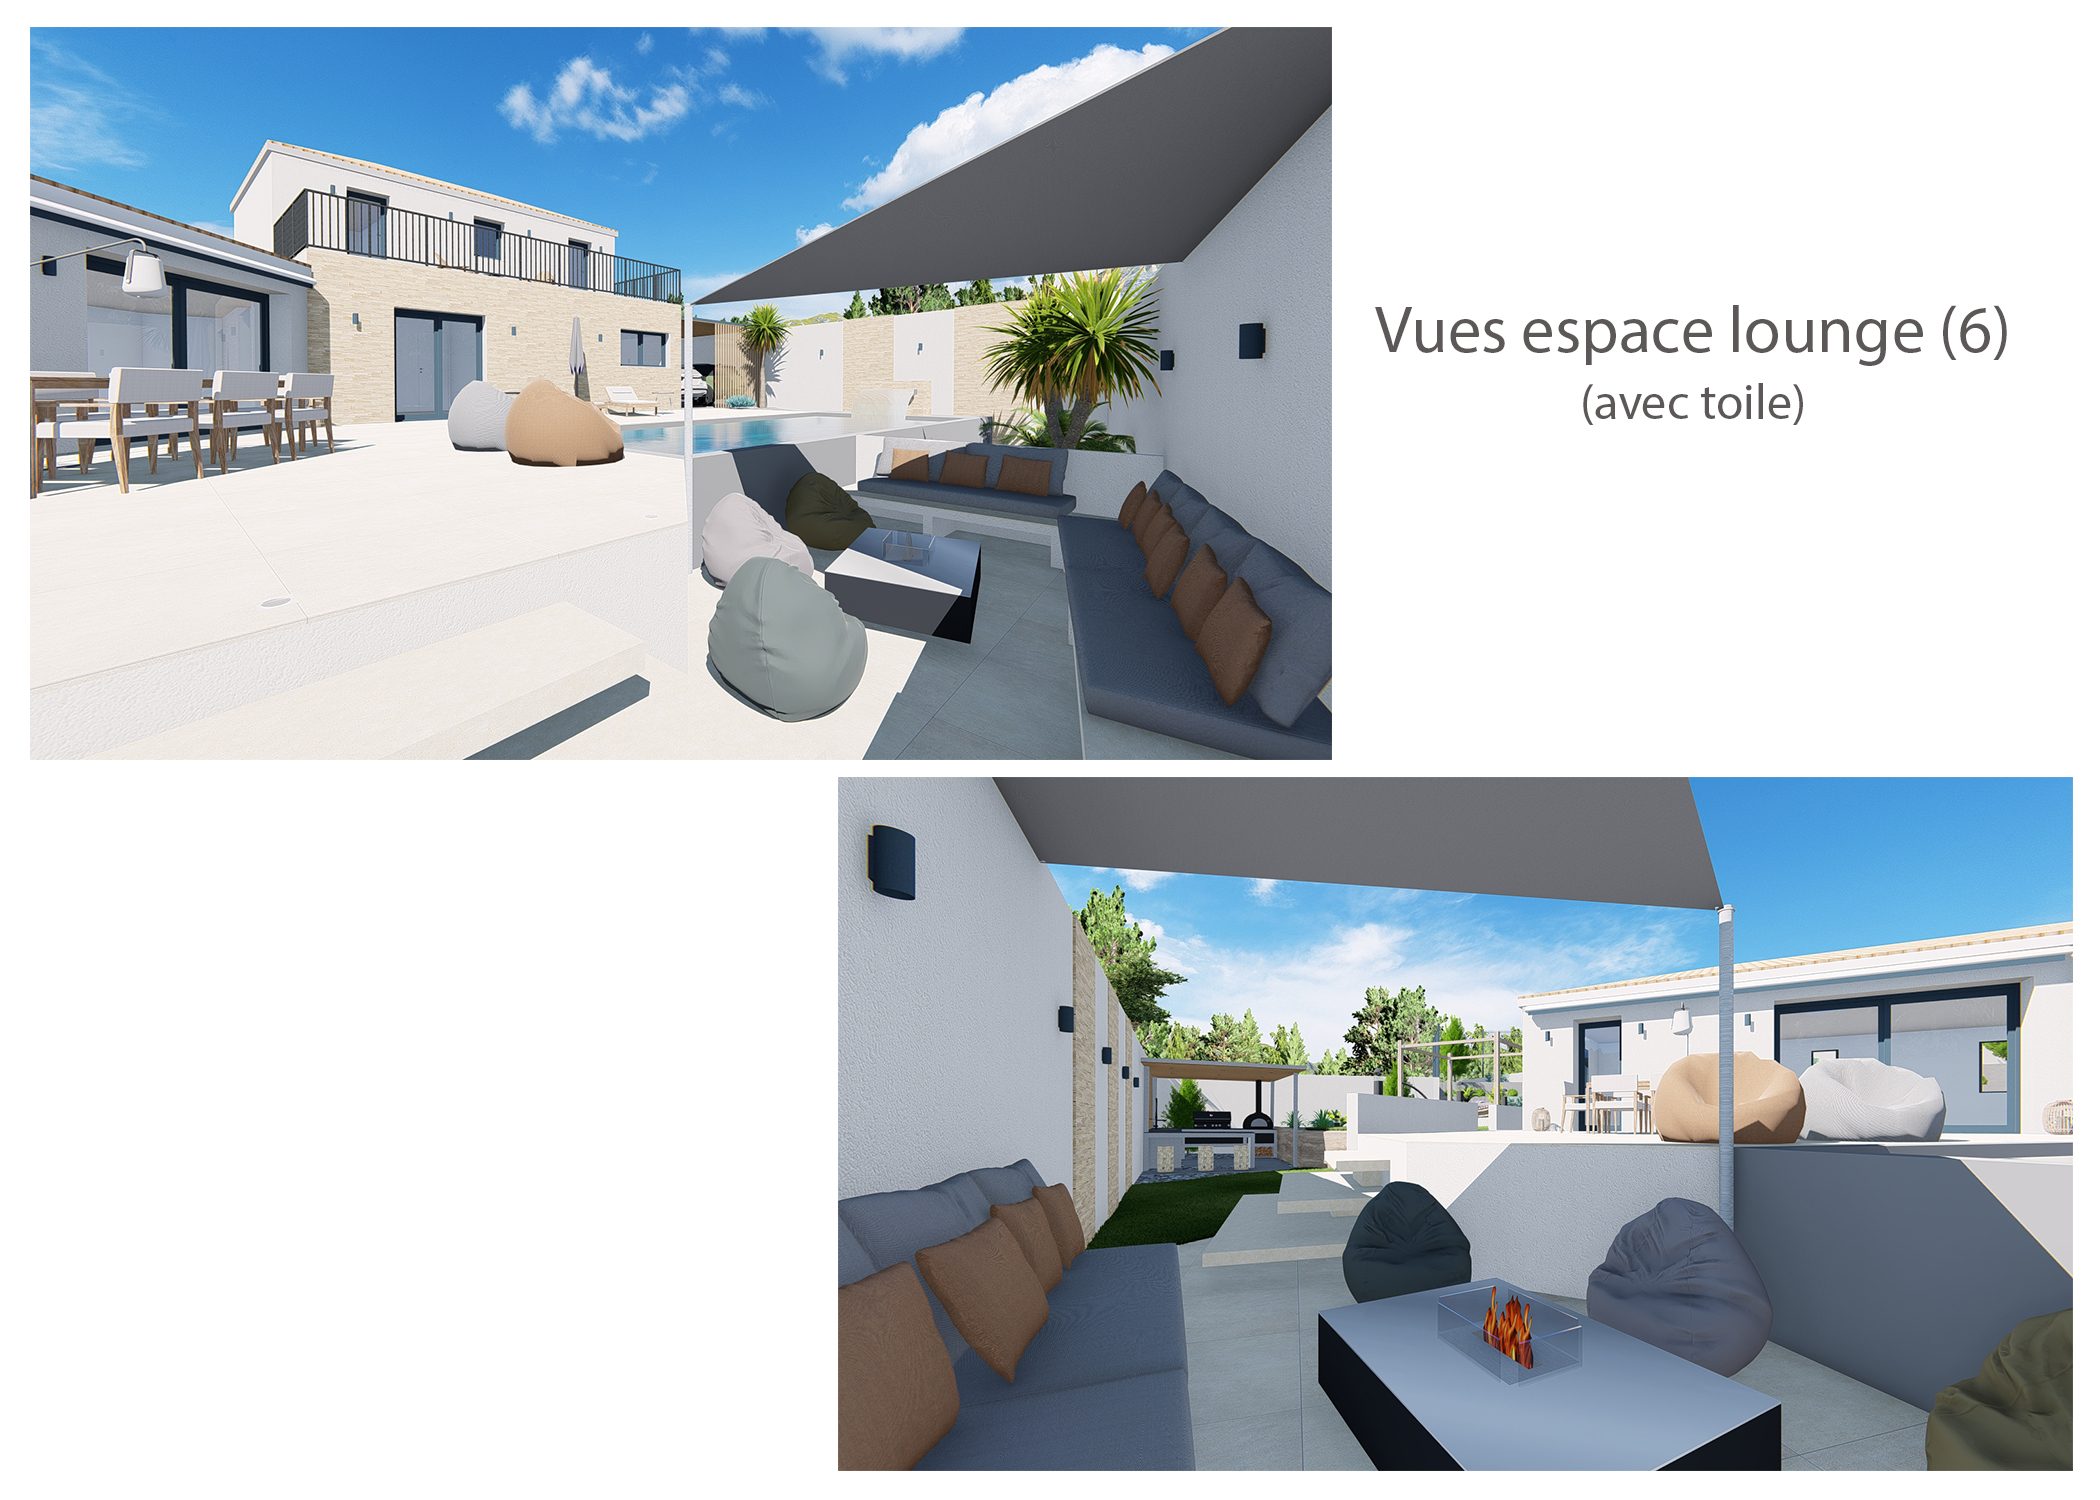 amenagement terrain gardanne-espace exterieur-vues espace lounge-dekho design